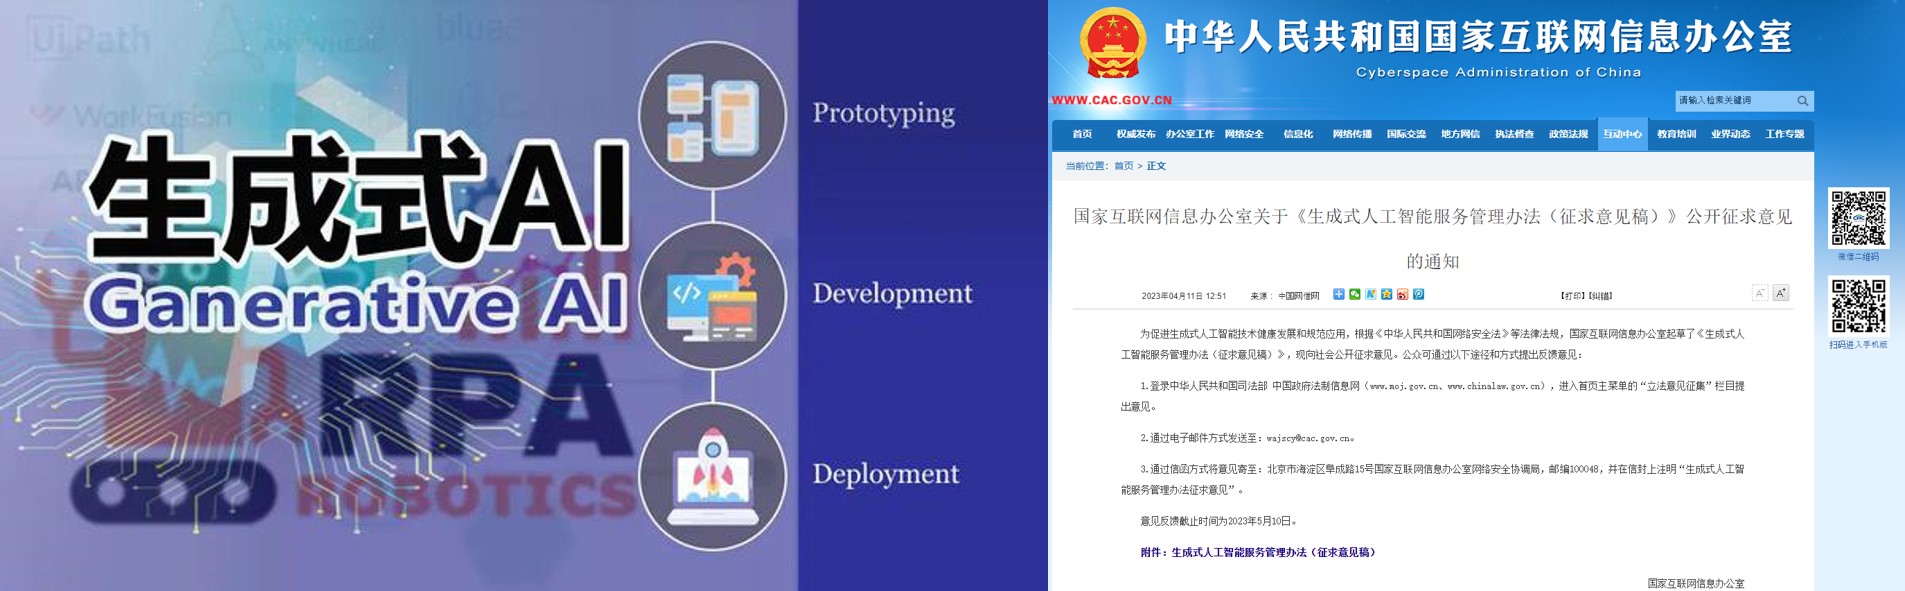 중국 생성형 인공지능서비스 이미지 및 관련 법률안 의견수렴 웹페이지 [출처: 중국 ICsmart, CAC]